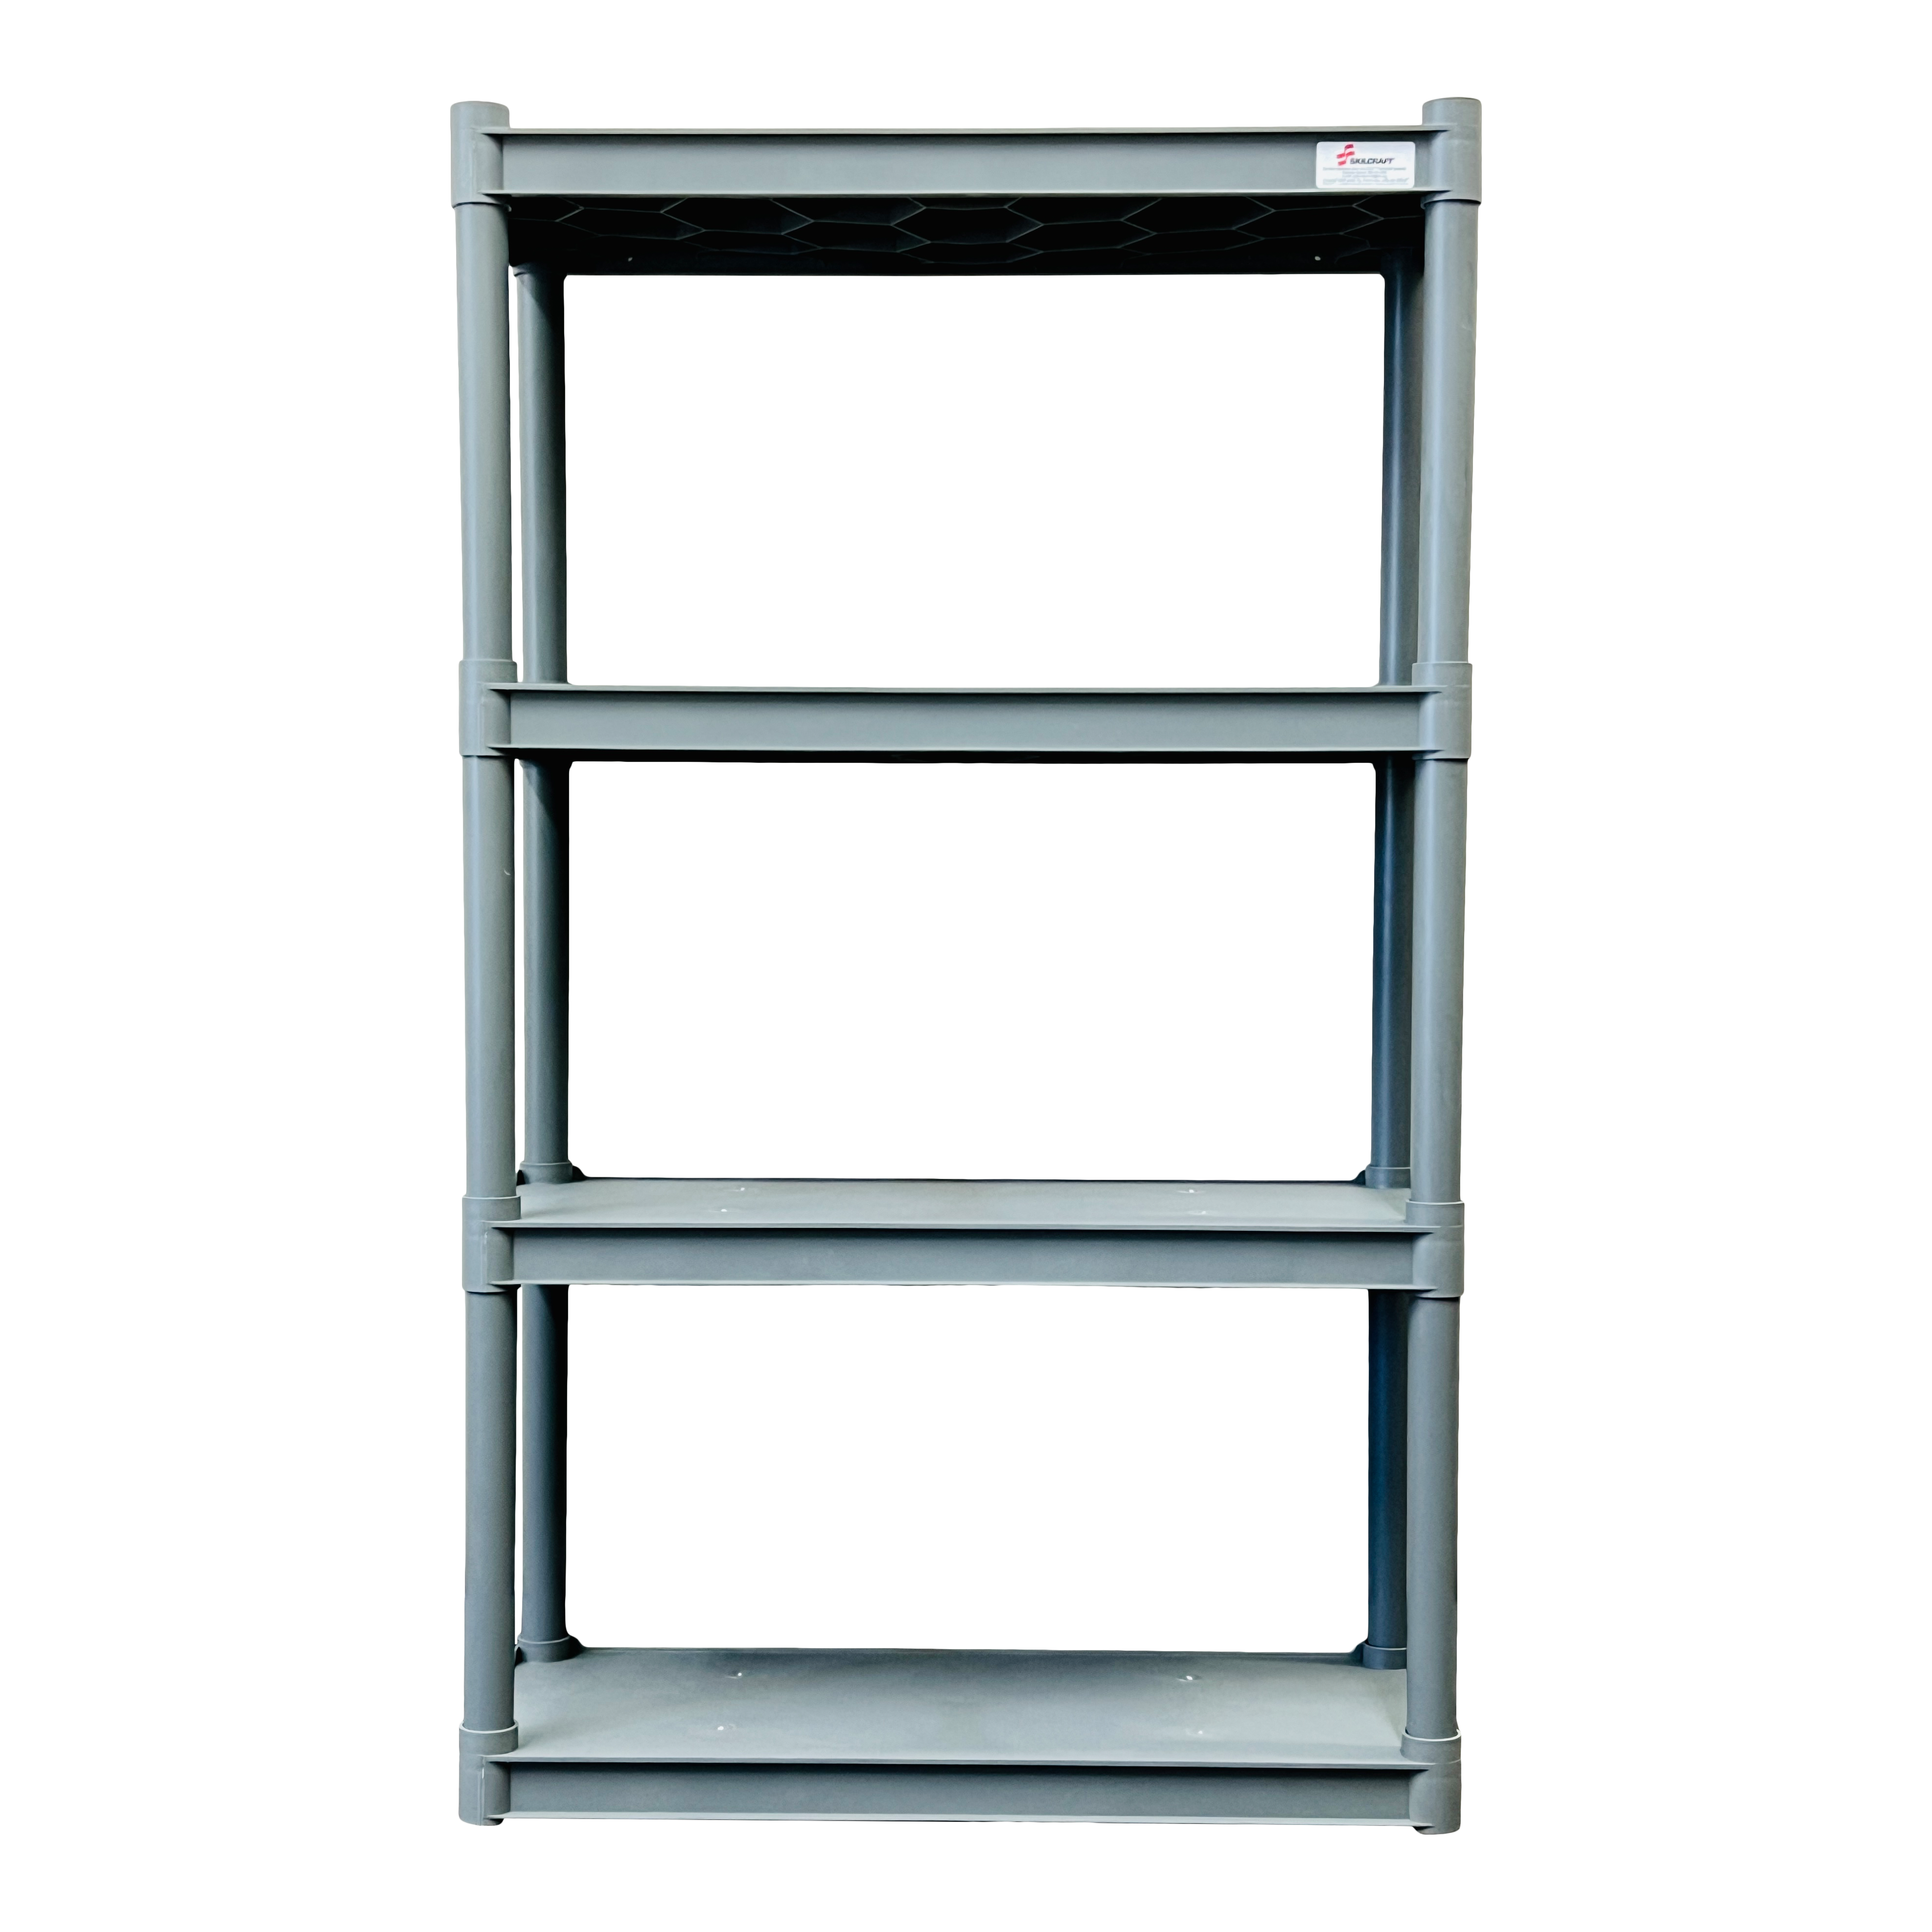 A charcoal four-shelf open storage unit.